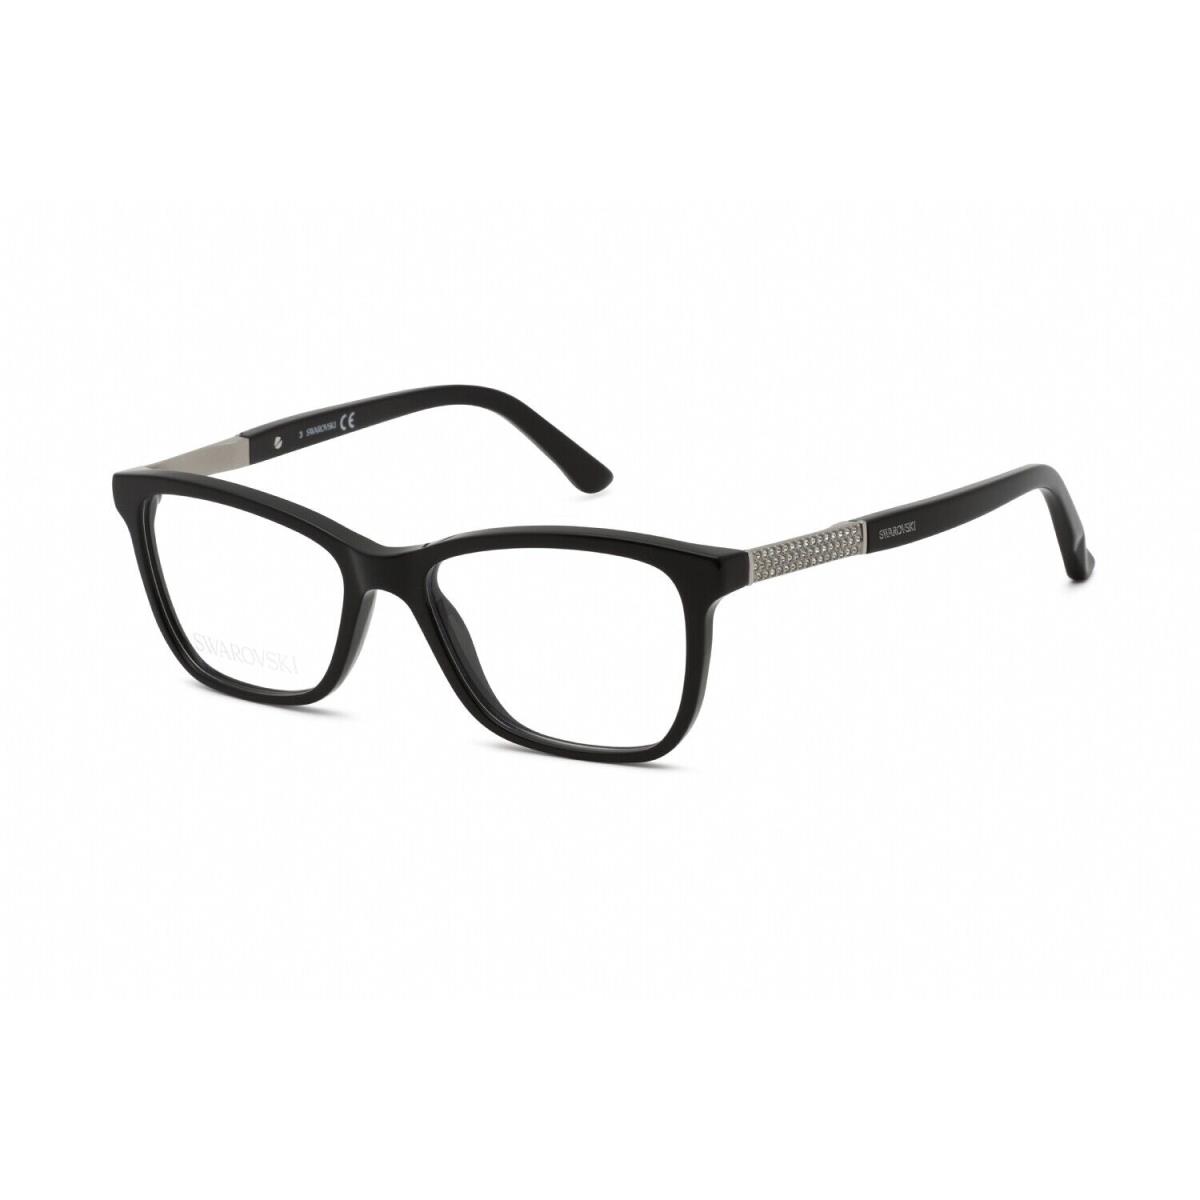 Swarovski SK5117 001 Eyeglasses Shiny Black Frame 51 Mm